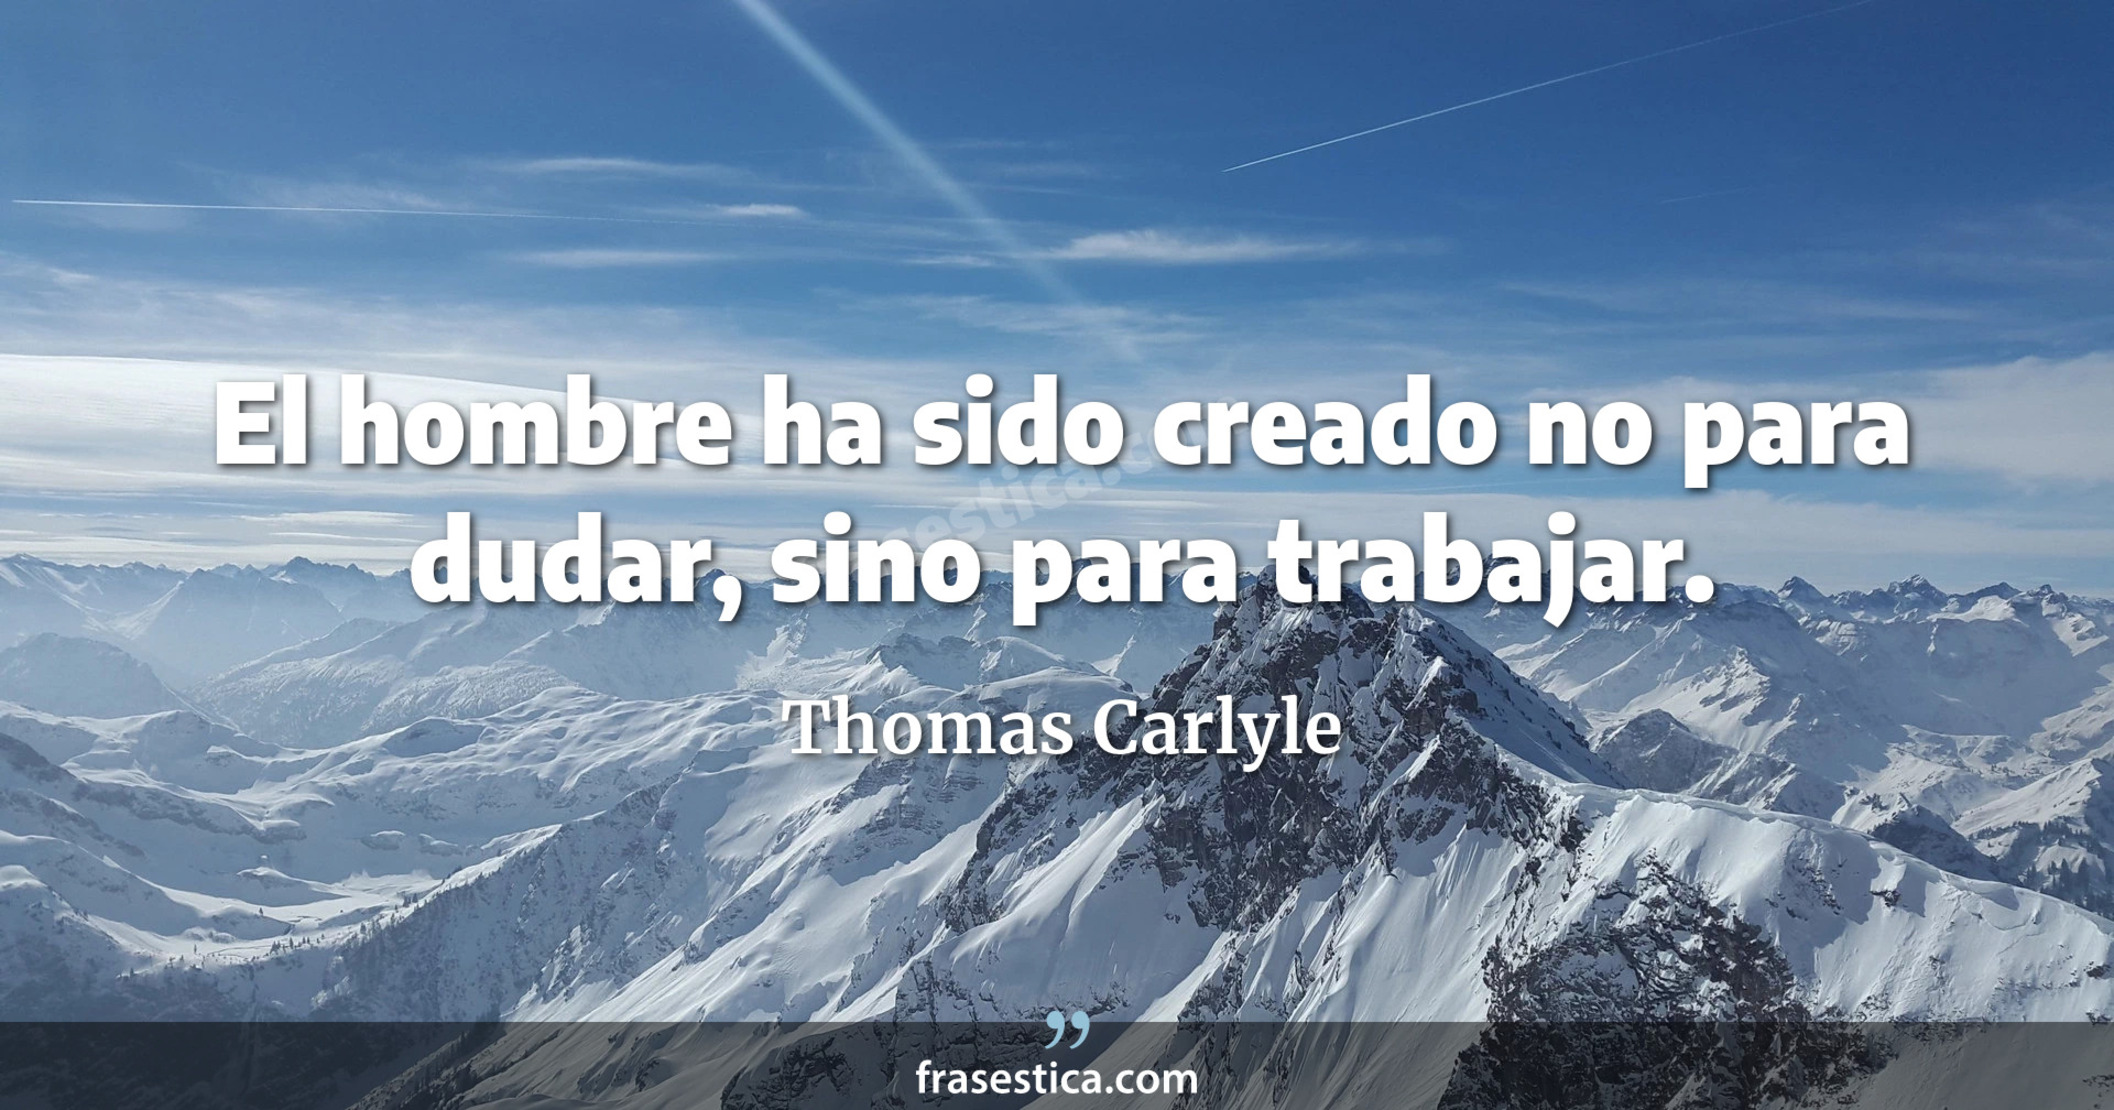 El hombre ha sido creado no para dudar, sino para trabajar. - Thomas Carlyle